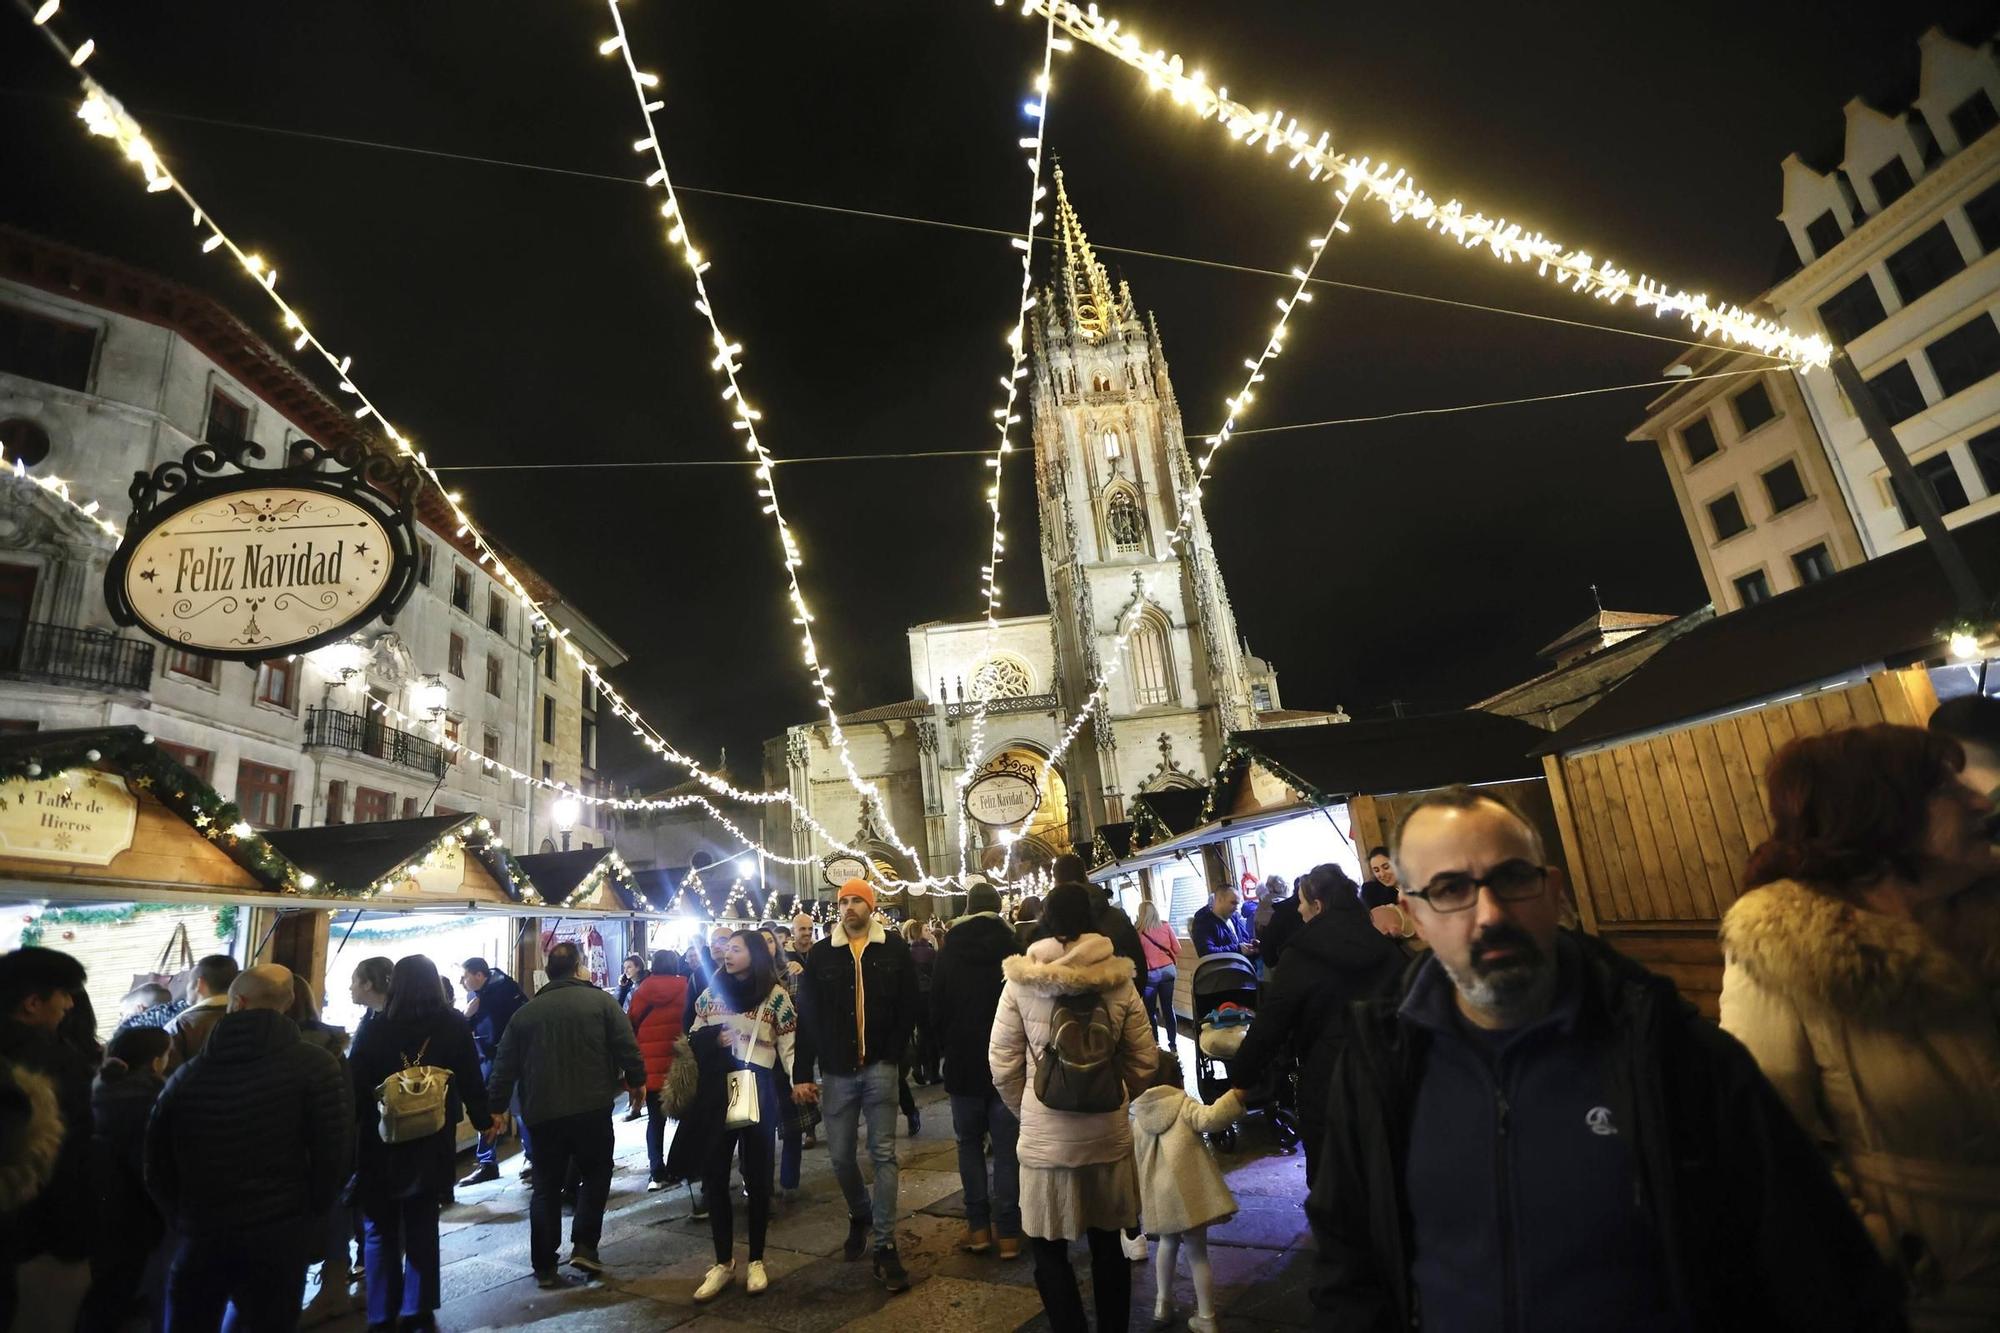 EN IMÁGENES: Asturias y sus visitantes "flipan" a más de 20 grados en Navidad: "Esto no es normal